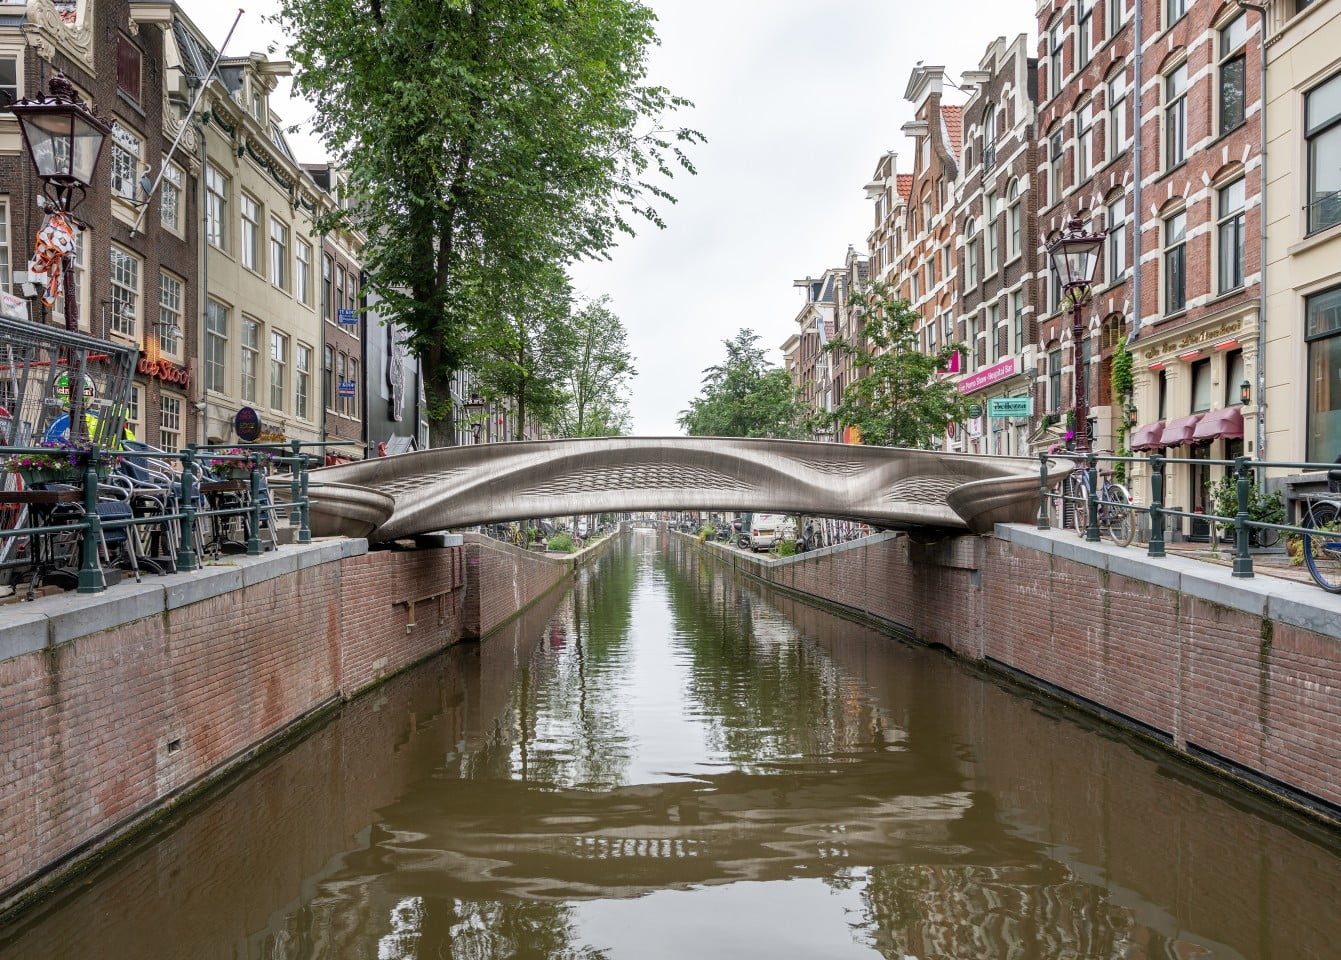 El primer puente impreso en 3D del mundo es una nueva atracción en Países Bajos.